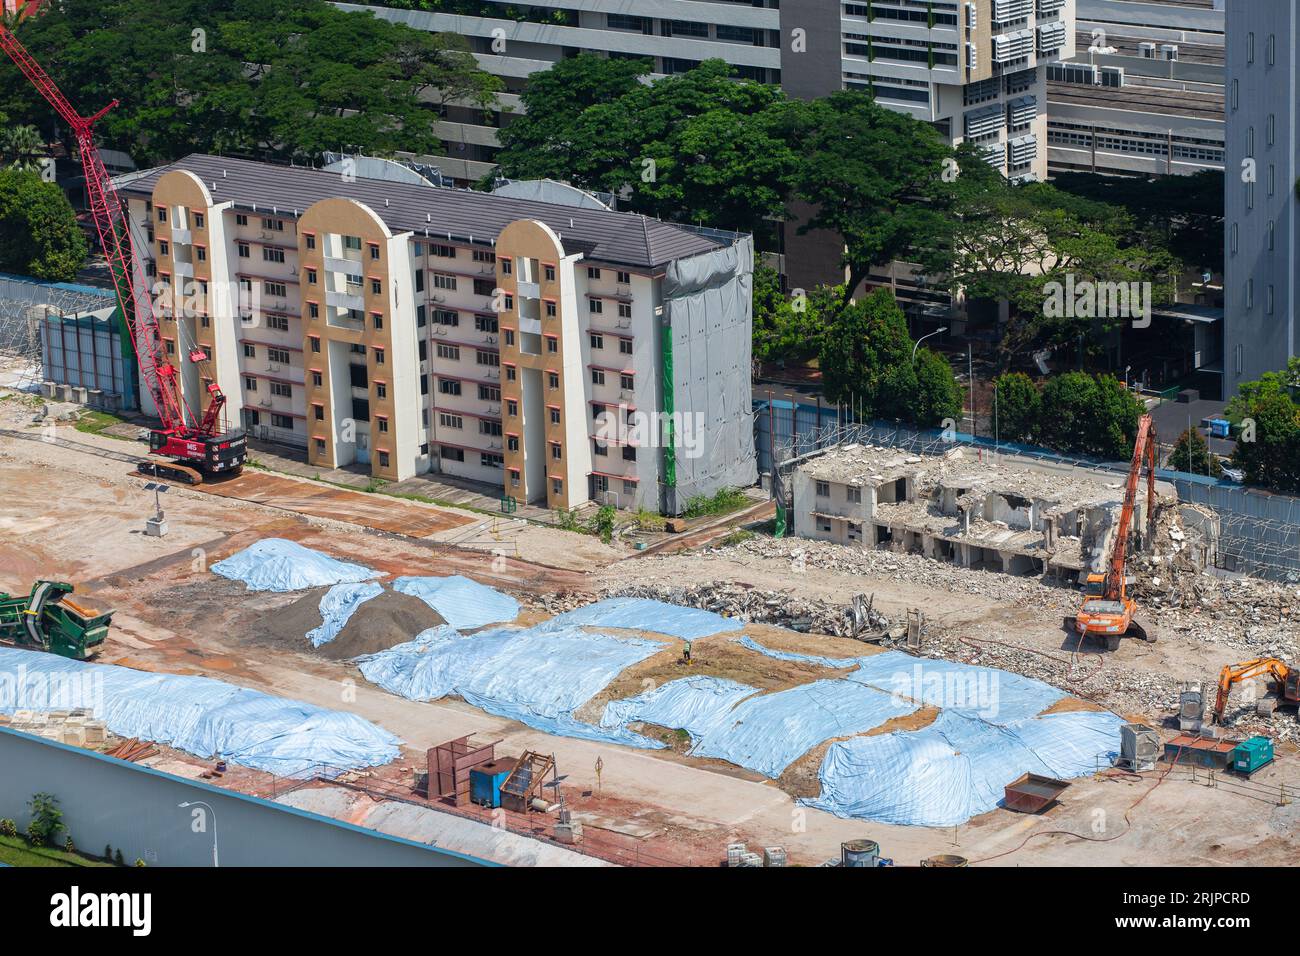 Vue aérienne d'une zone de démolition de vieux appartements à Redhill, nouvelle planification urbaine en cours pour répondre à la demande de logements à Singapour. Banque D'Images